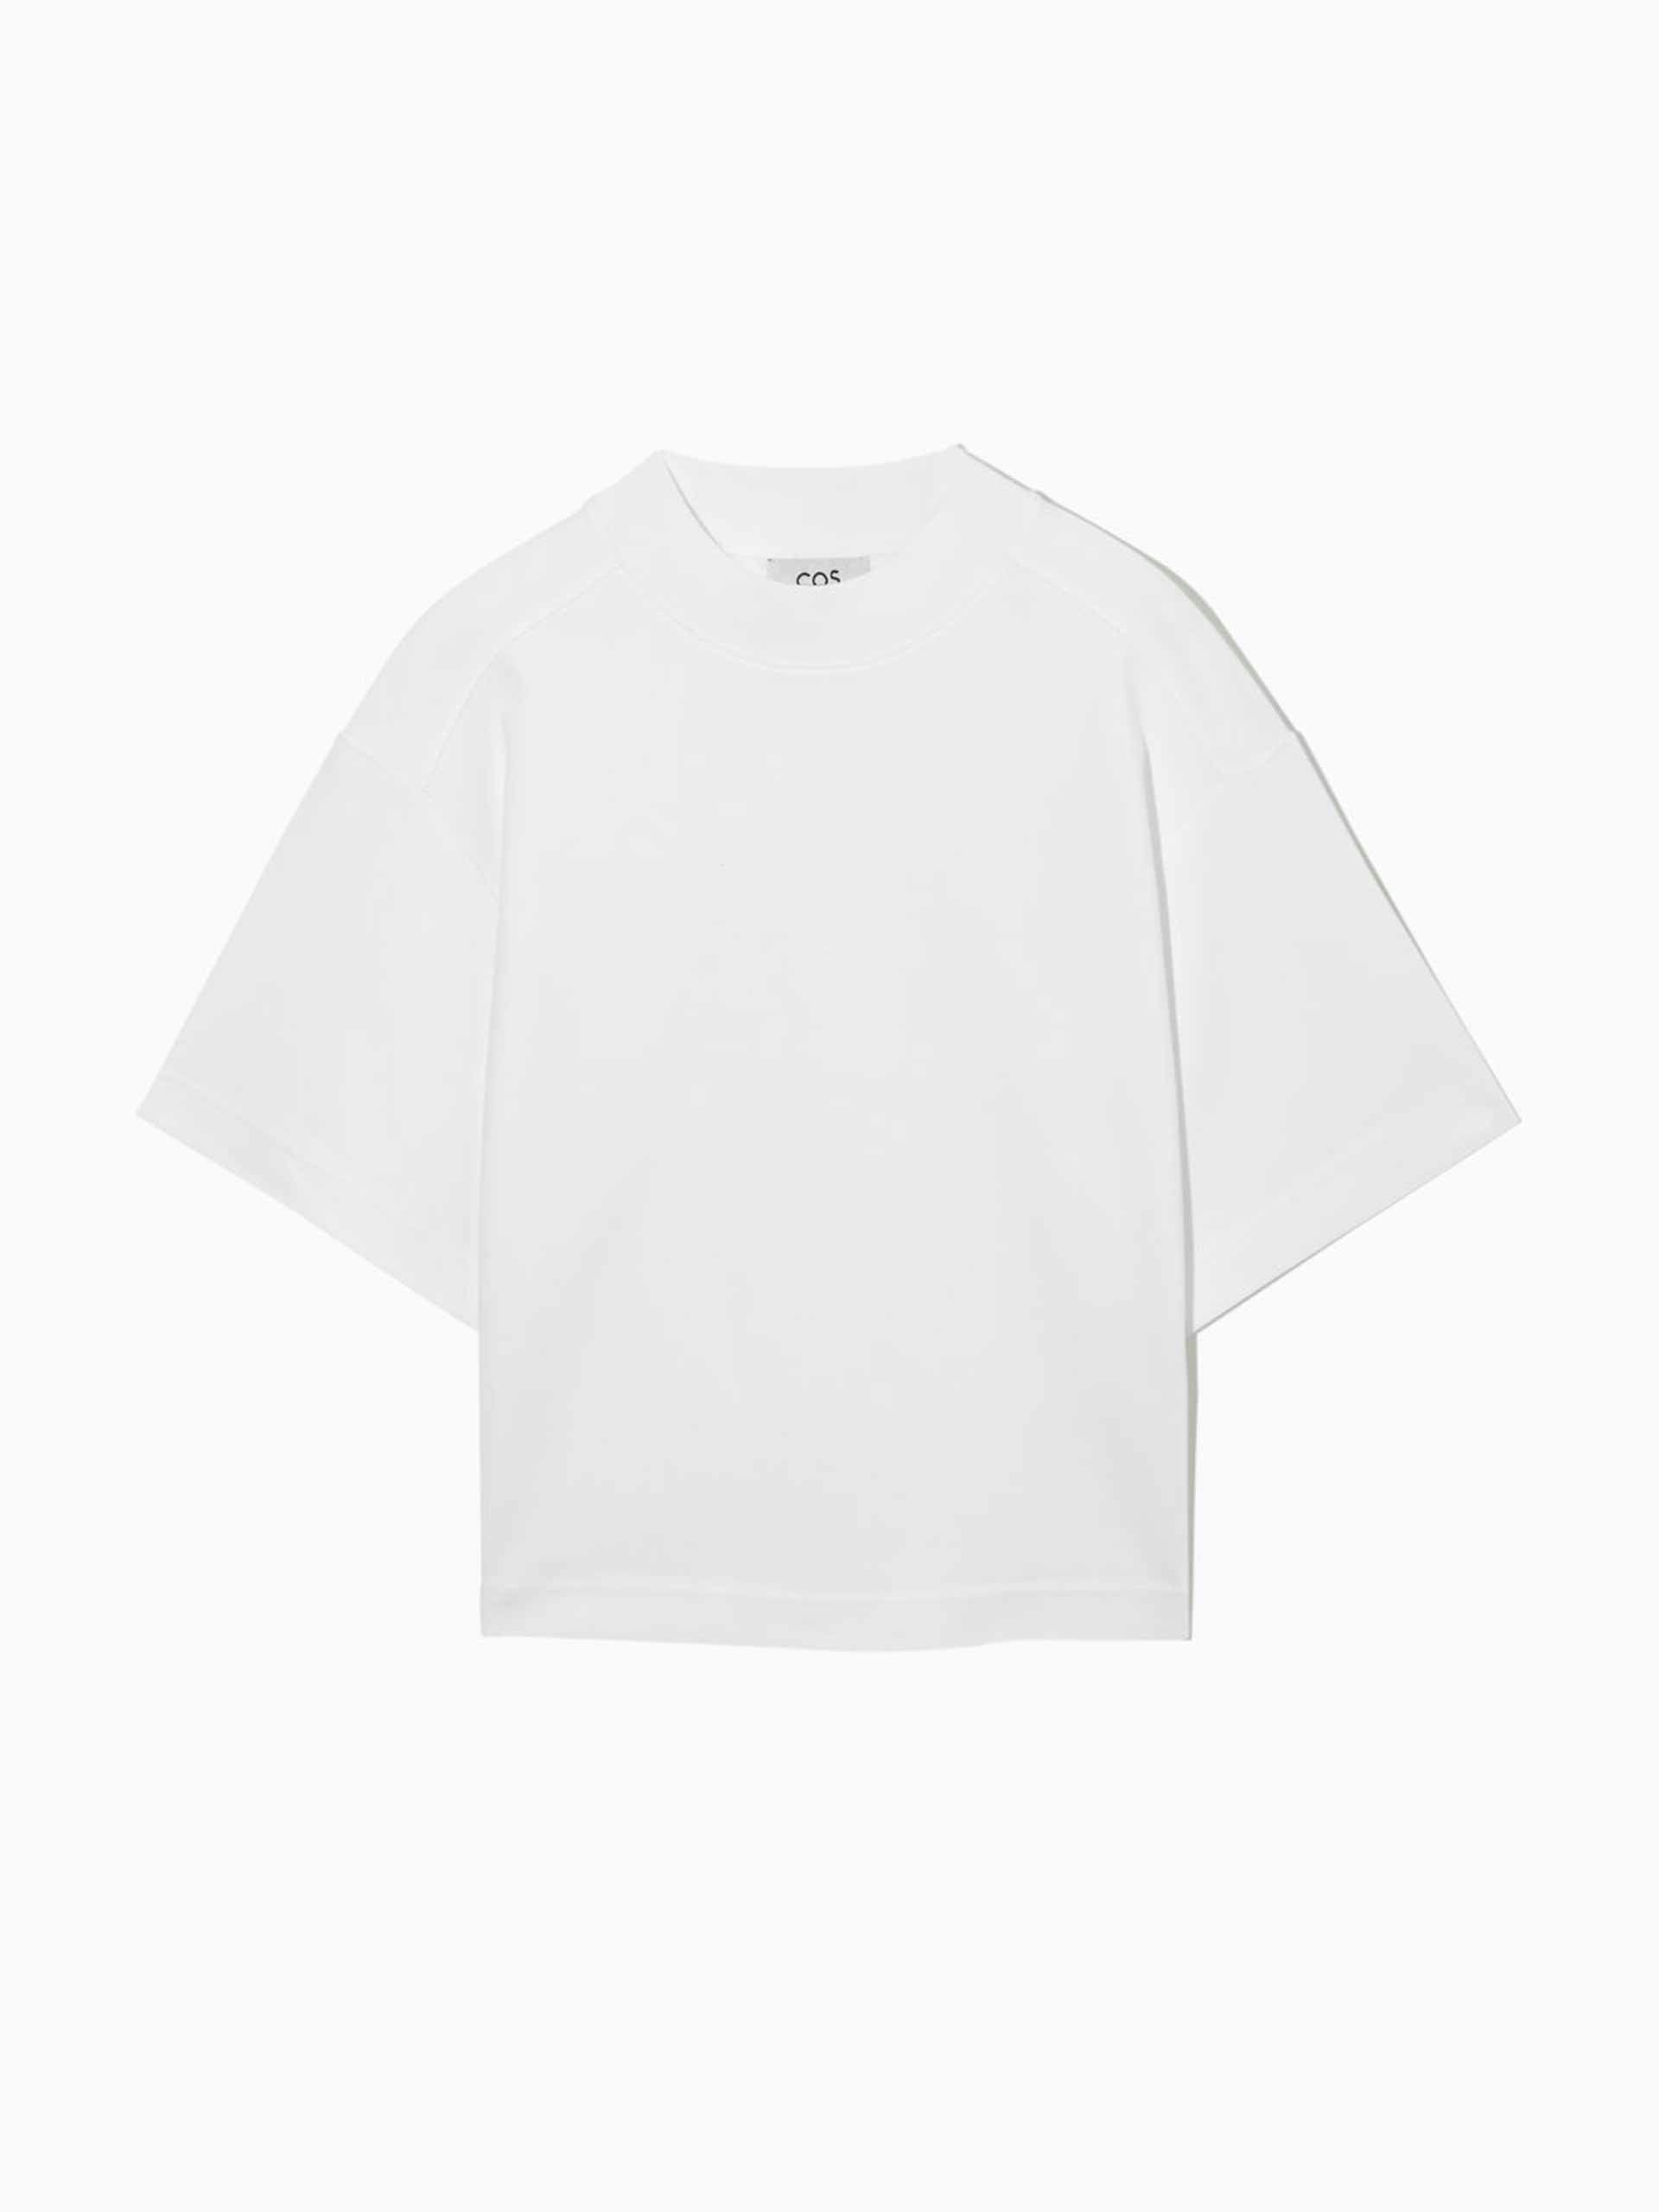 Boxy-fit white t-shirt